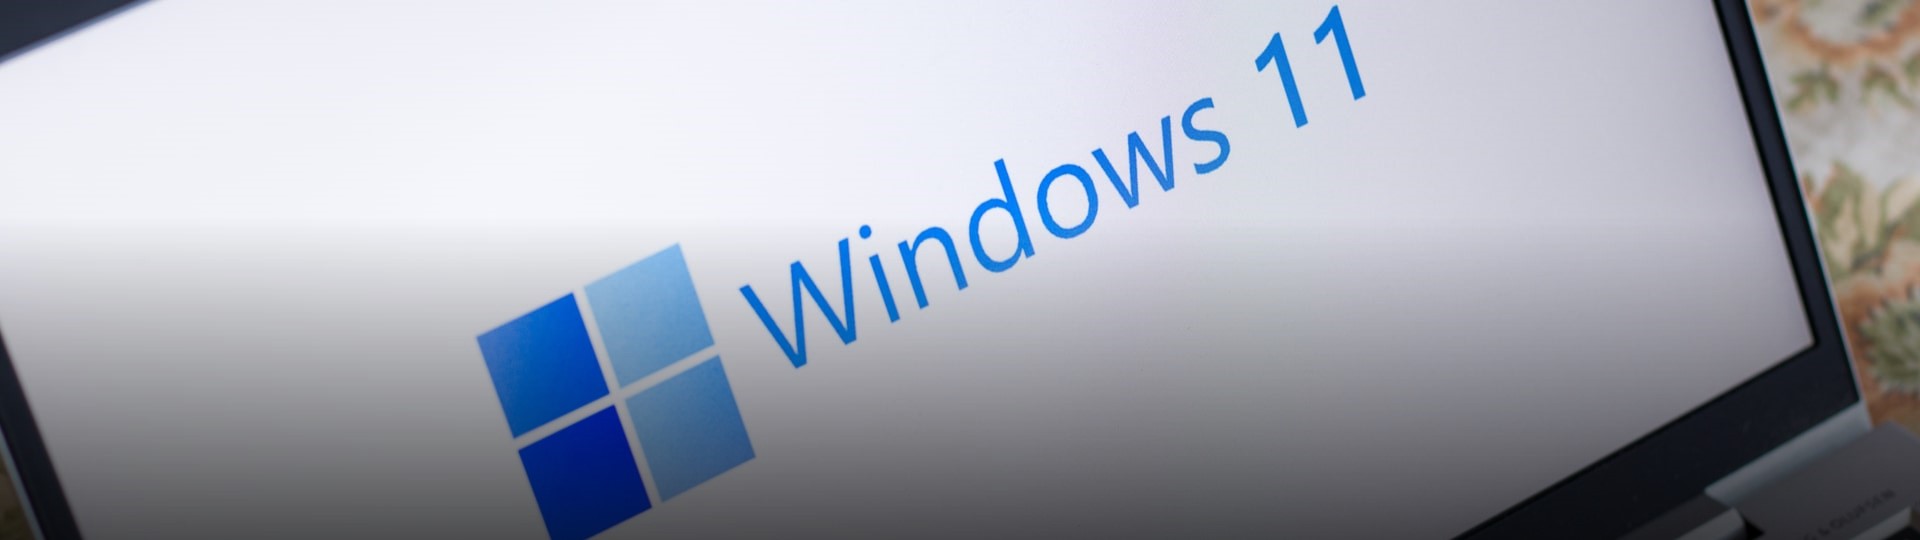 Microsoft představil novou verzi svého operačního systému Windows